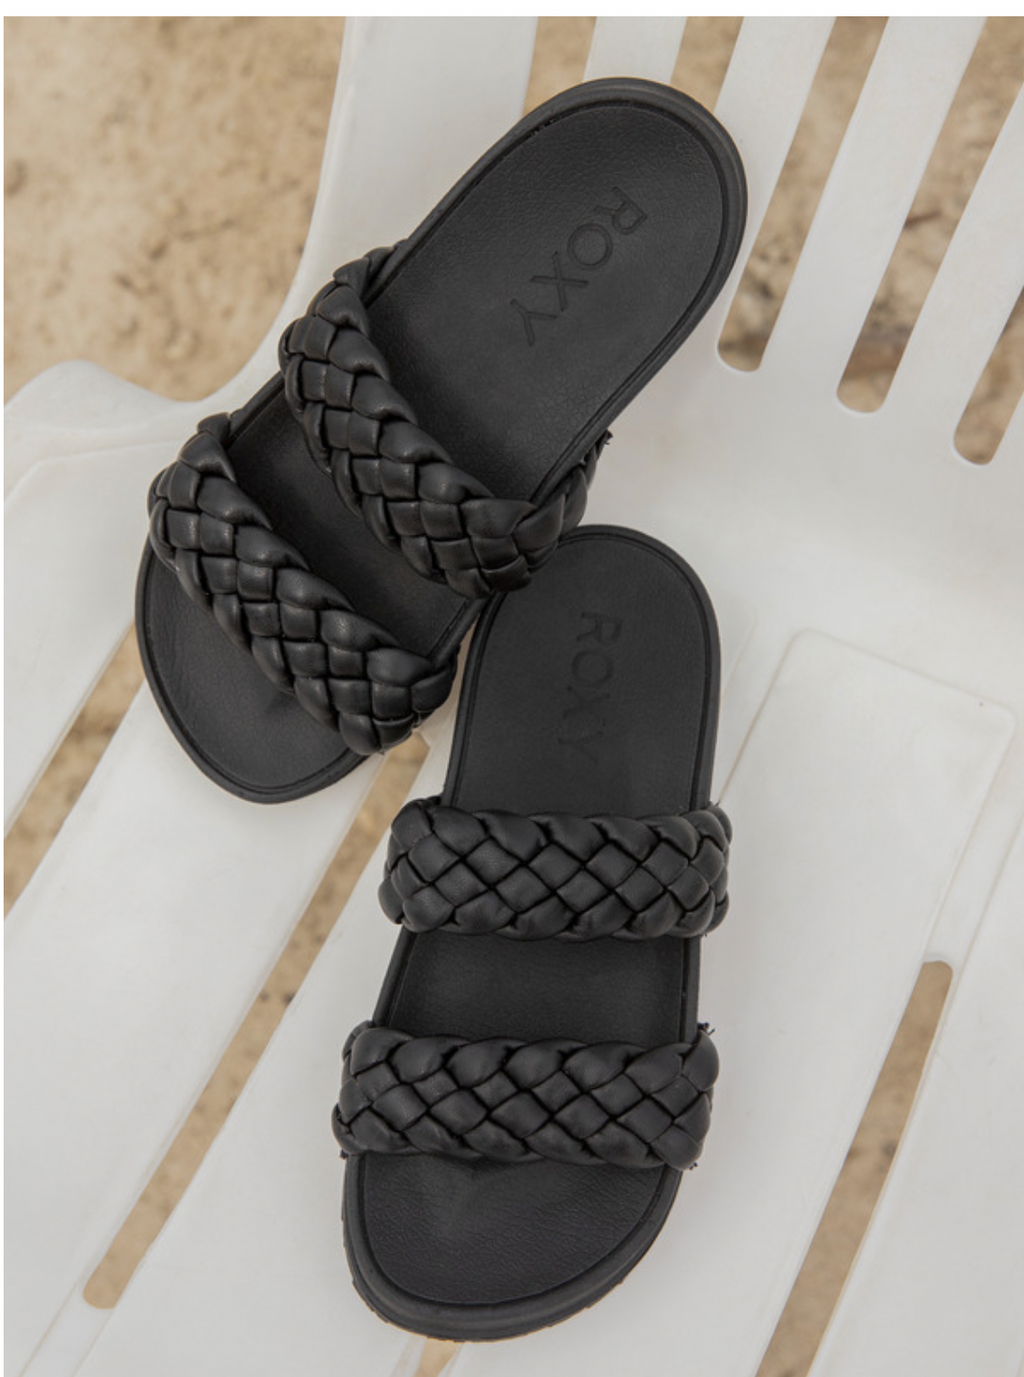 Slippy Nina - Slider Sandals for Women